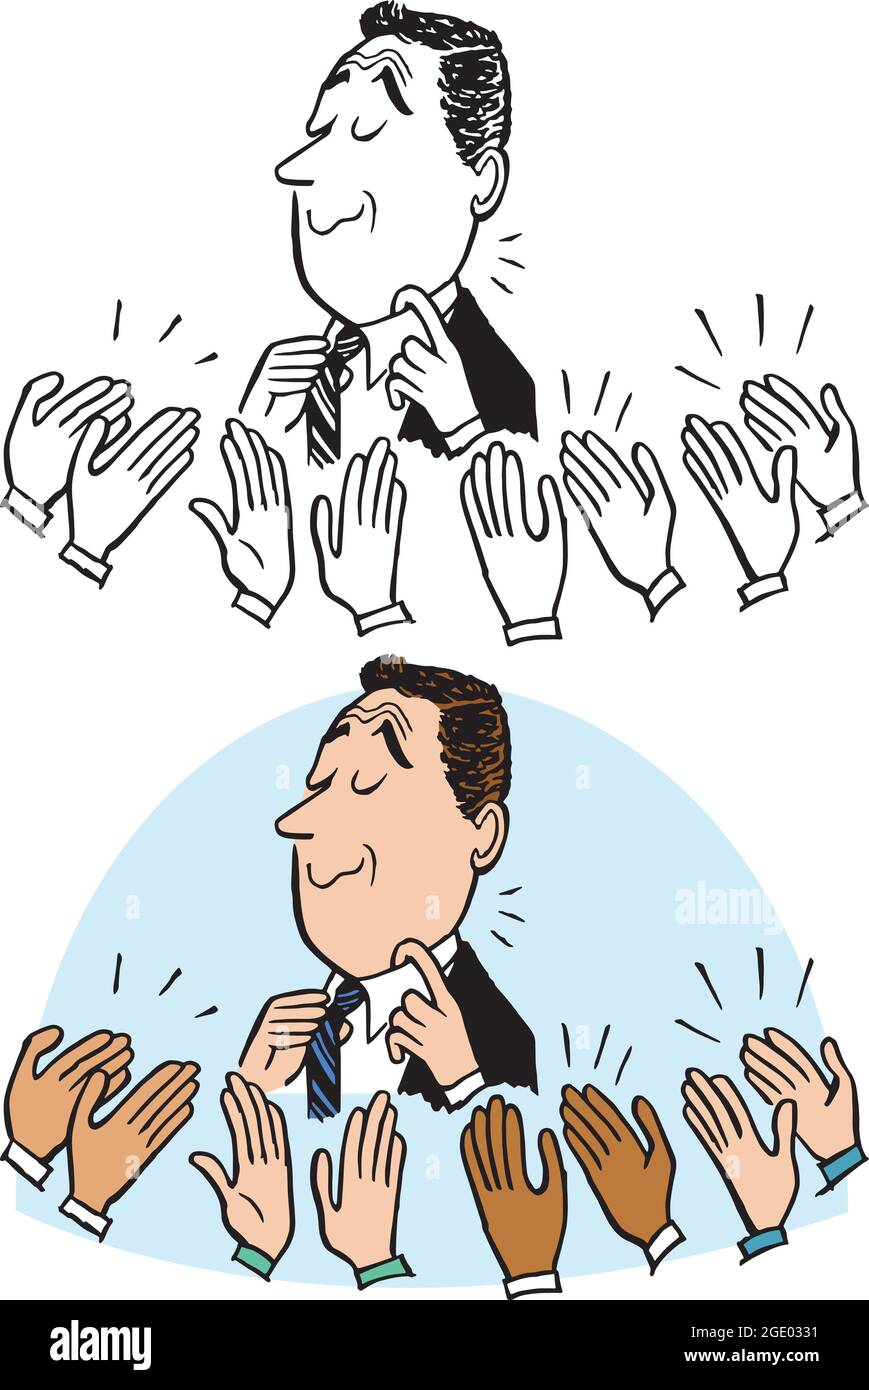 Un dessin animé rétro vintage d'un homme d'affaires recevant une série d'applaudissements. Illustration de Vecteur